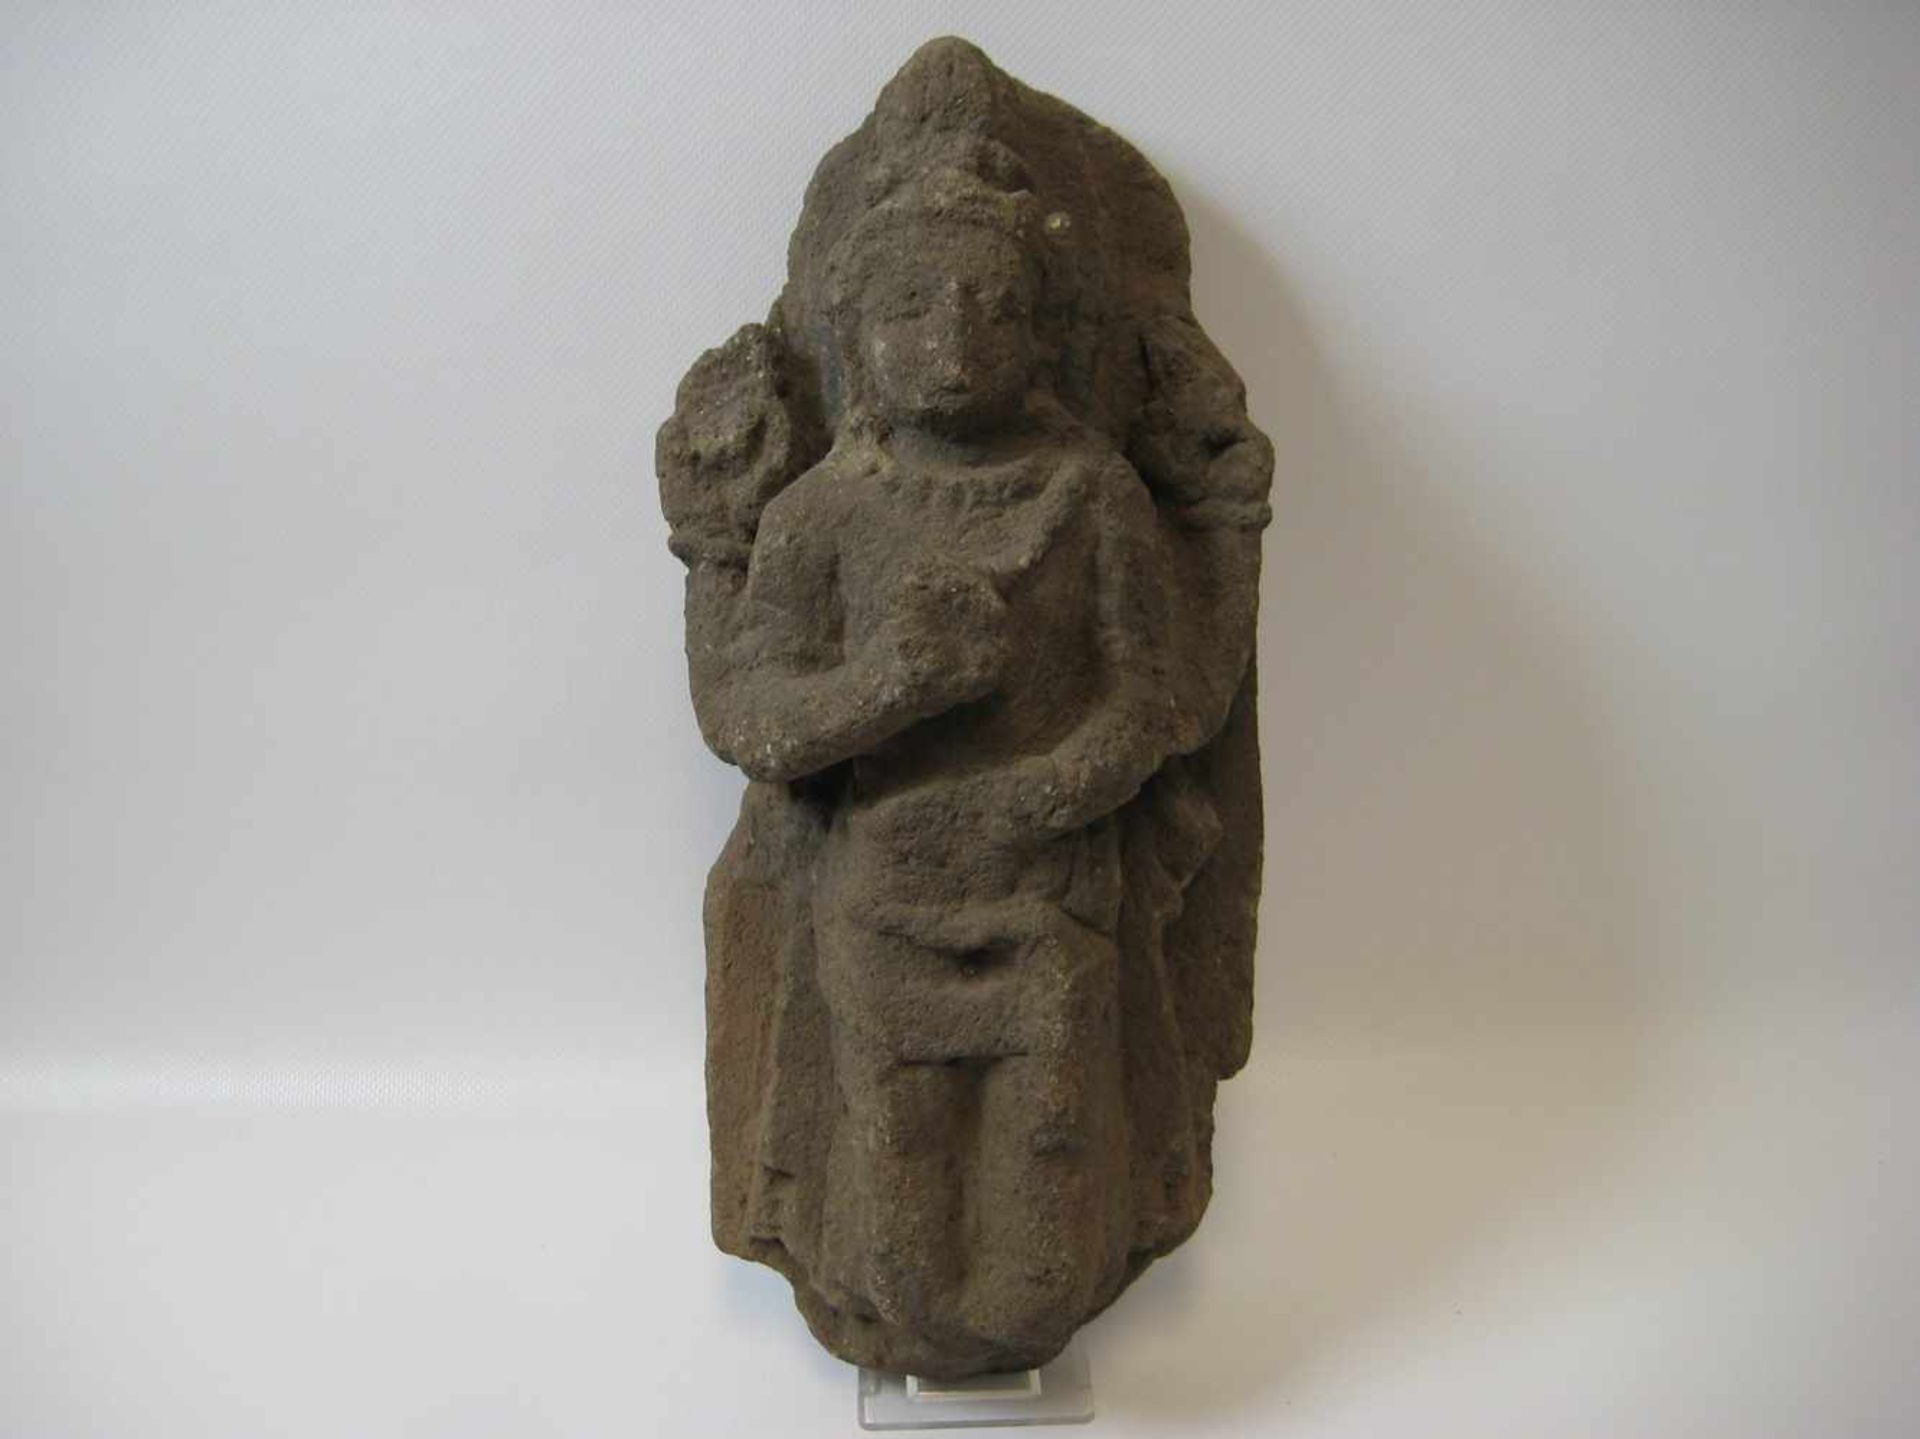 Vierarmige Götterfigur, wohl Indien, Stein, 34 x 15 x 10 cm.- - -19.00 % buyer's premium on the